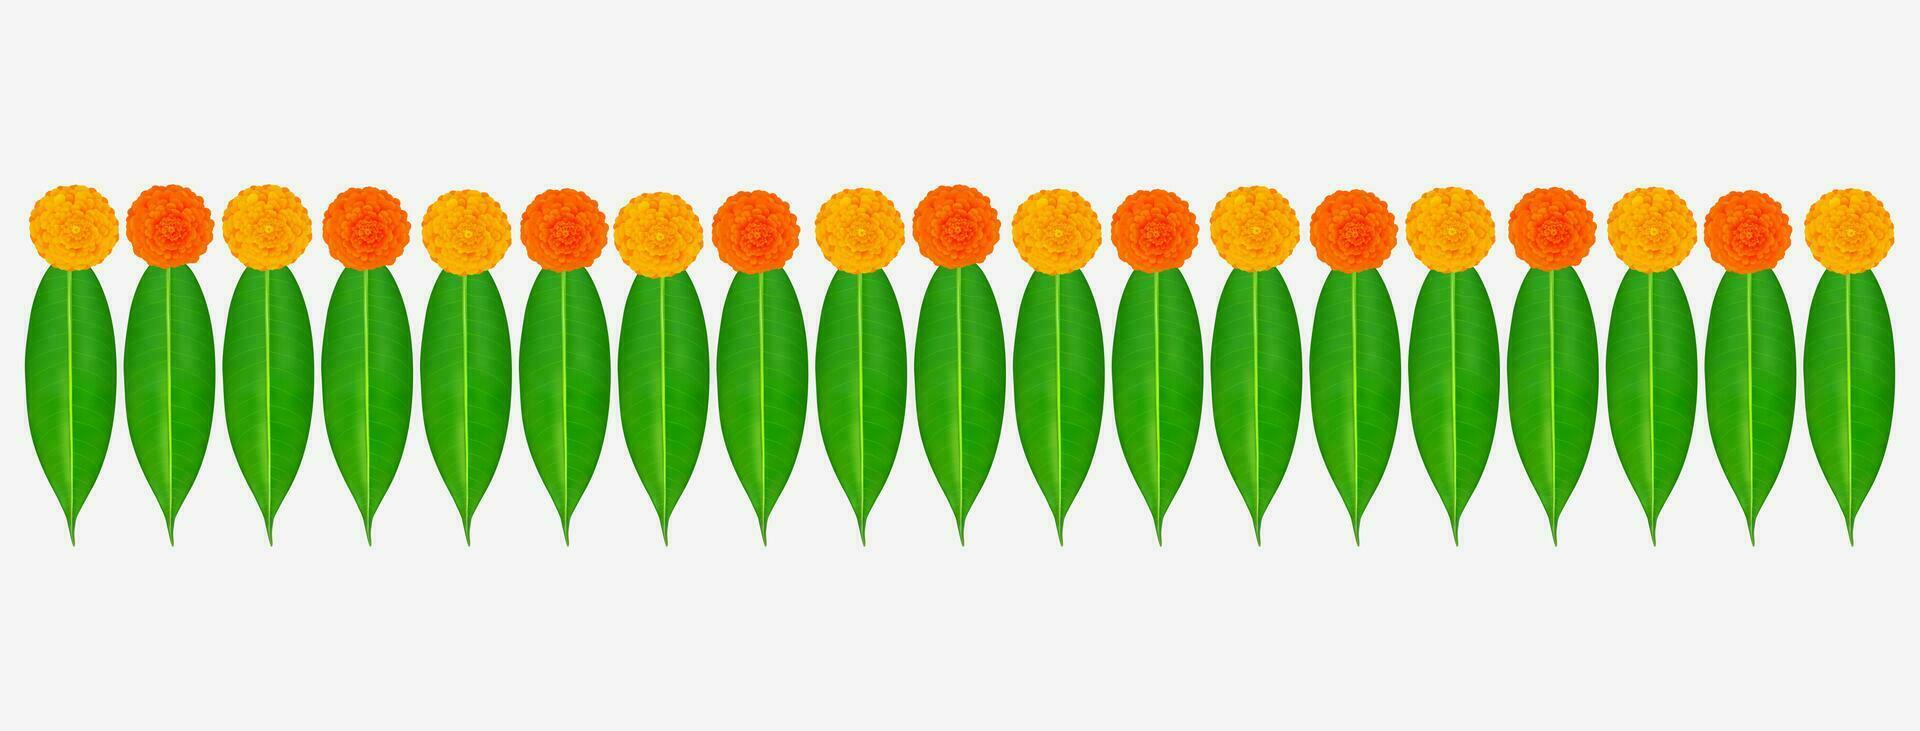 tradicional indiano calêndula flor festão com manga folhas. decoração para indiano hindu feriados ou casamentos ou puja festival, indiano festival flor decoração vetor